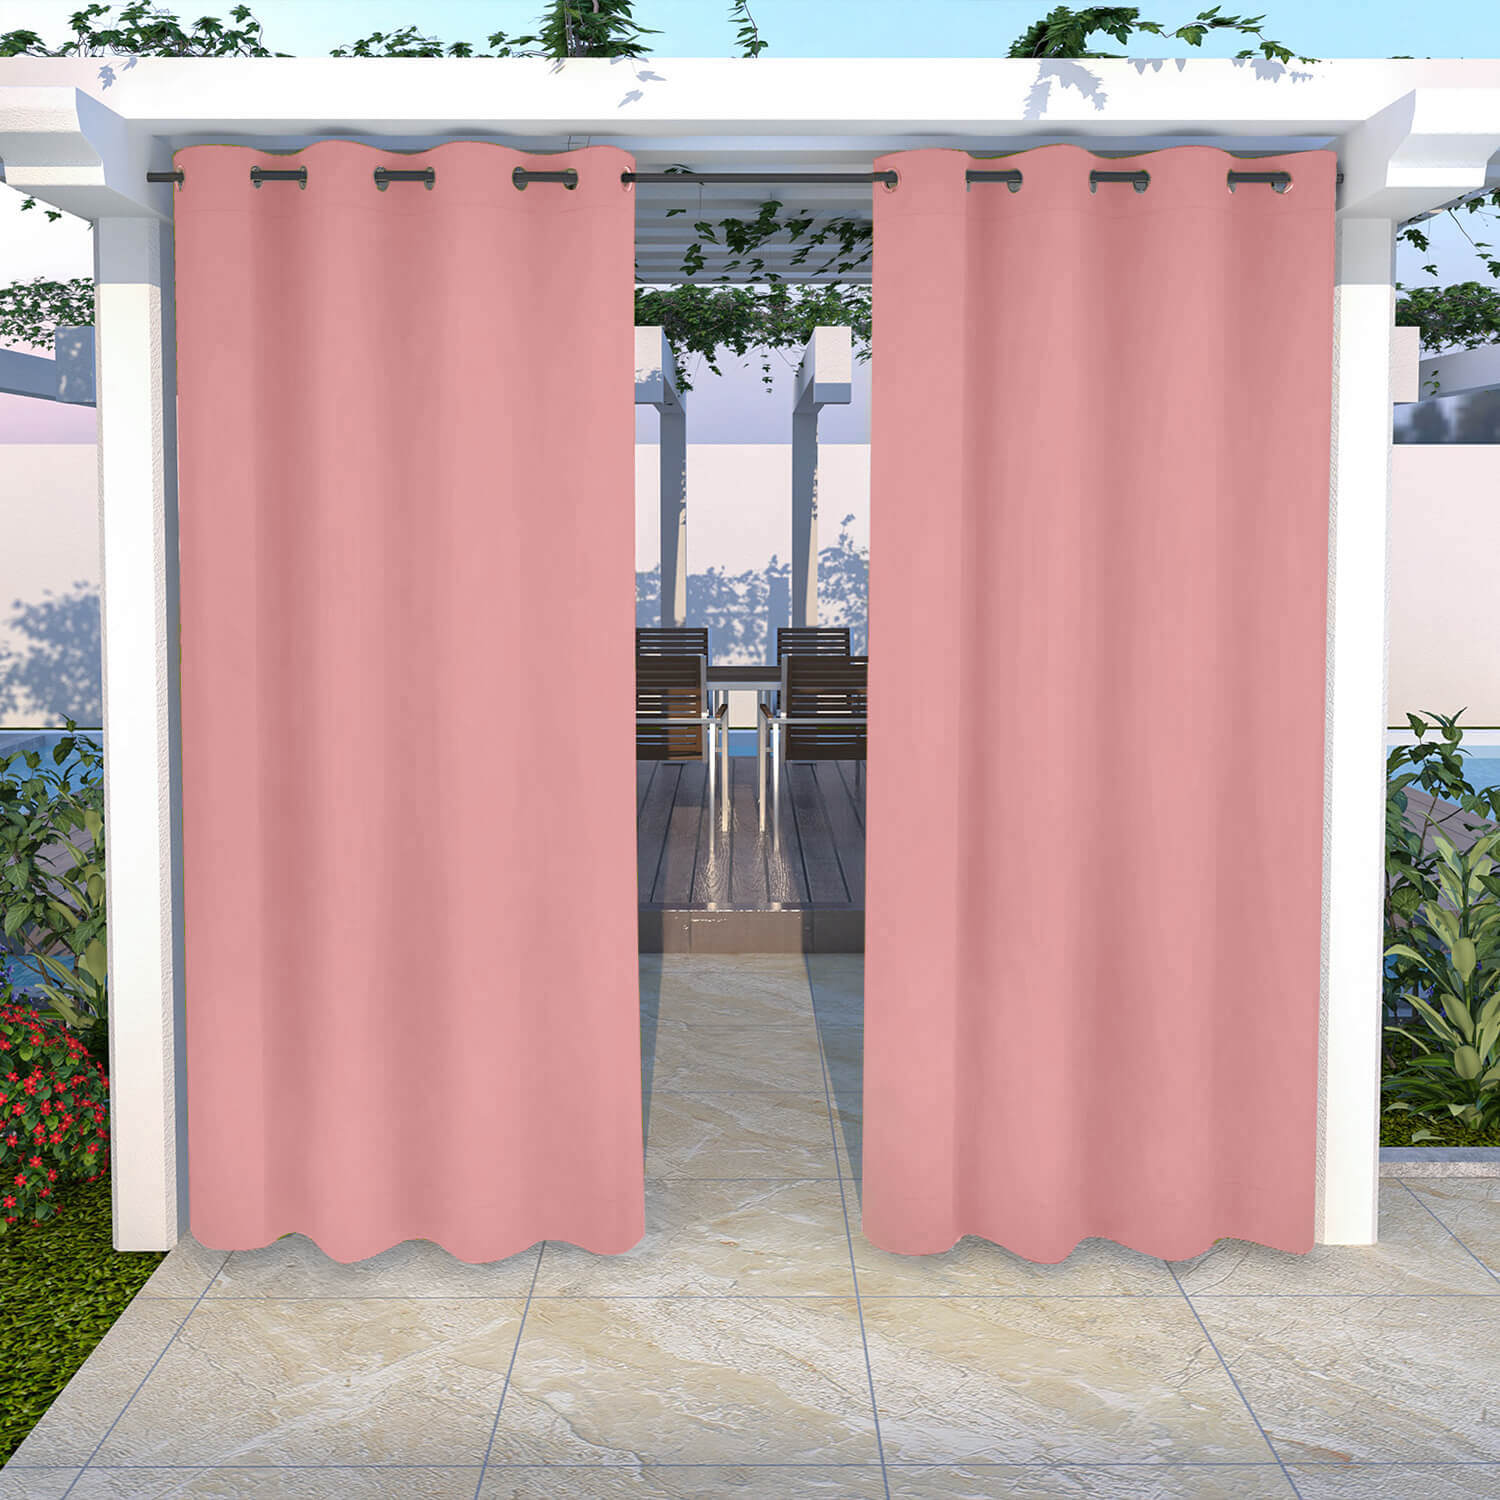 Snowcity Outdoor Curtains Waterproof Grommet Top 1 Panel - Pink